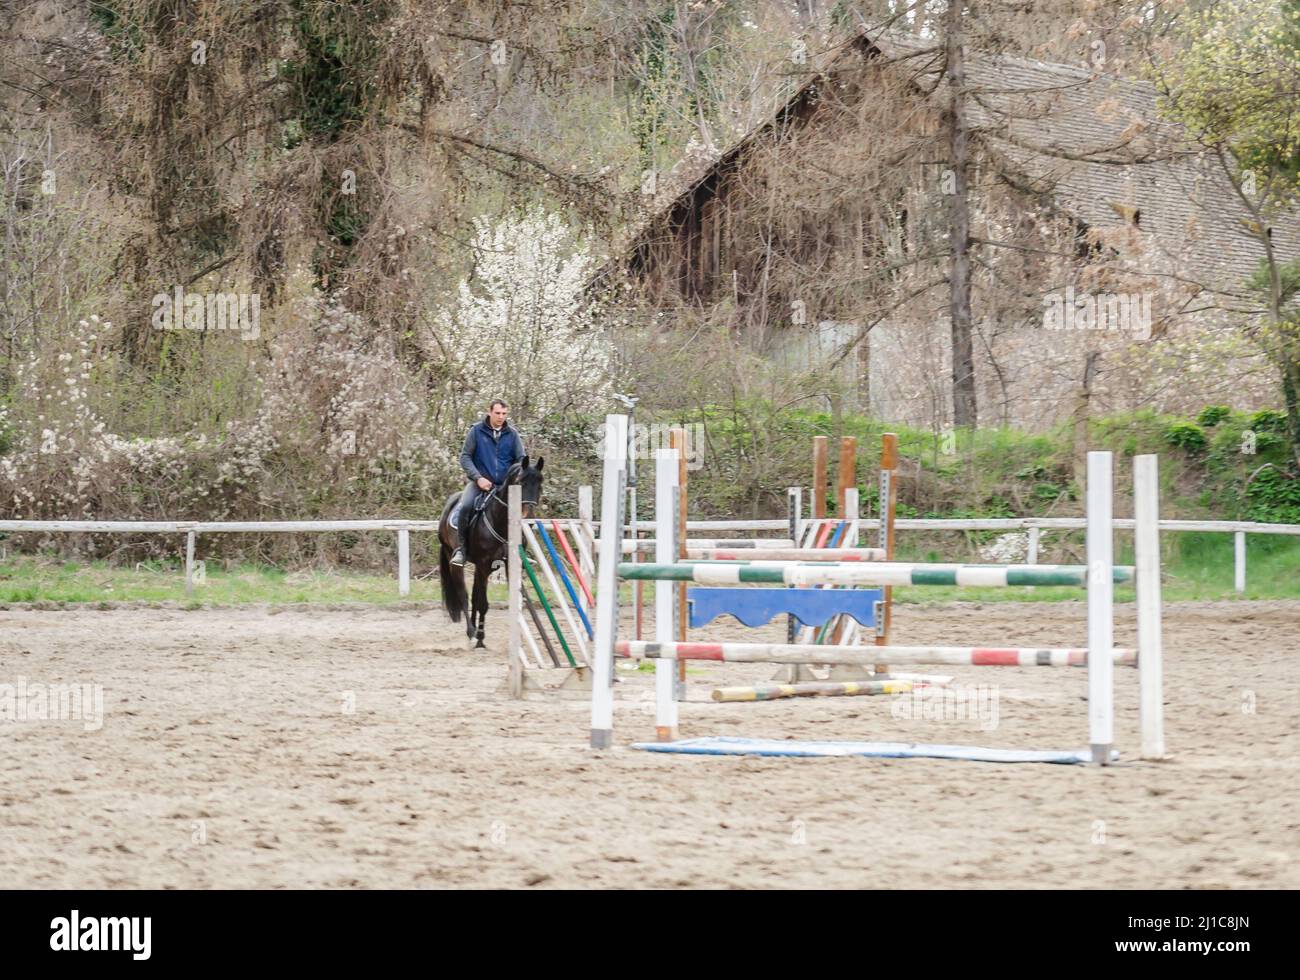 Novi Sad, Serbien - 16. März 2019: Reiter bei der Ausbildung einer Rodelräumung. Redaktionelle Bilder Stockfoto